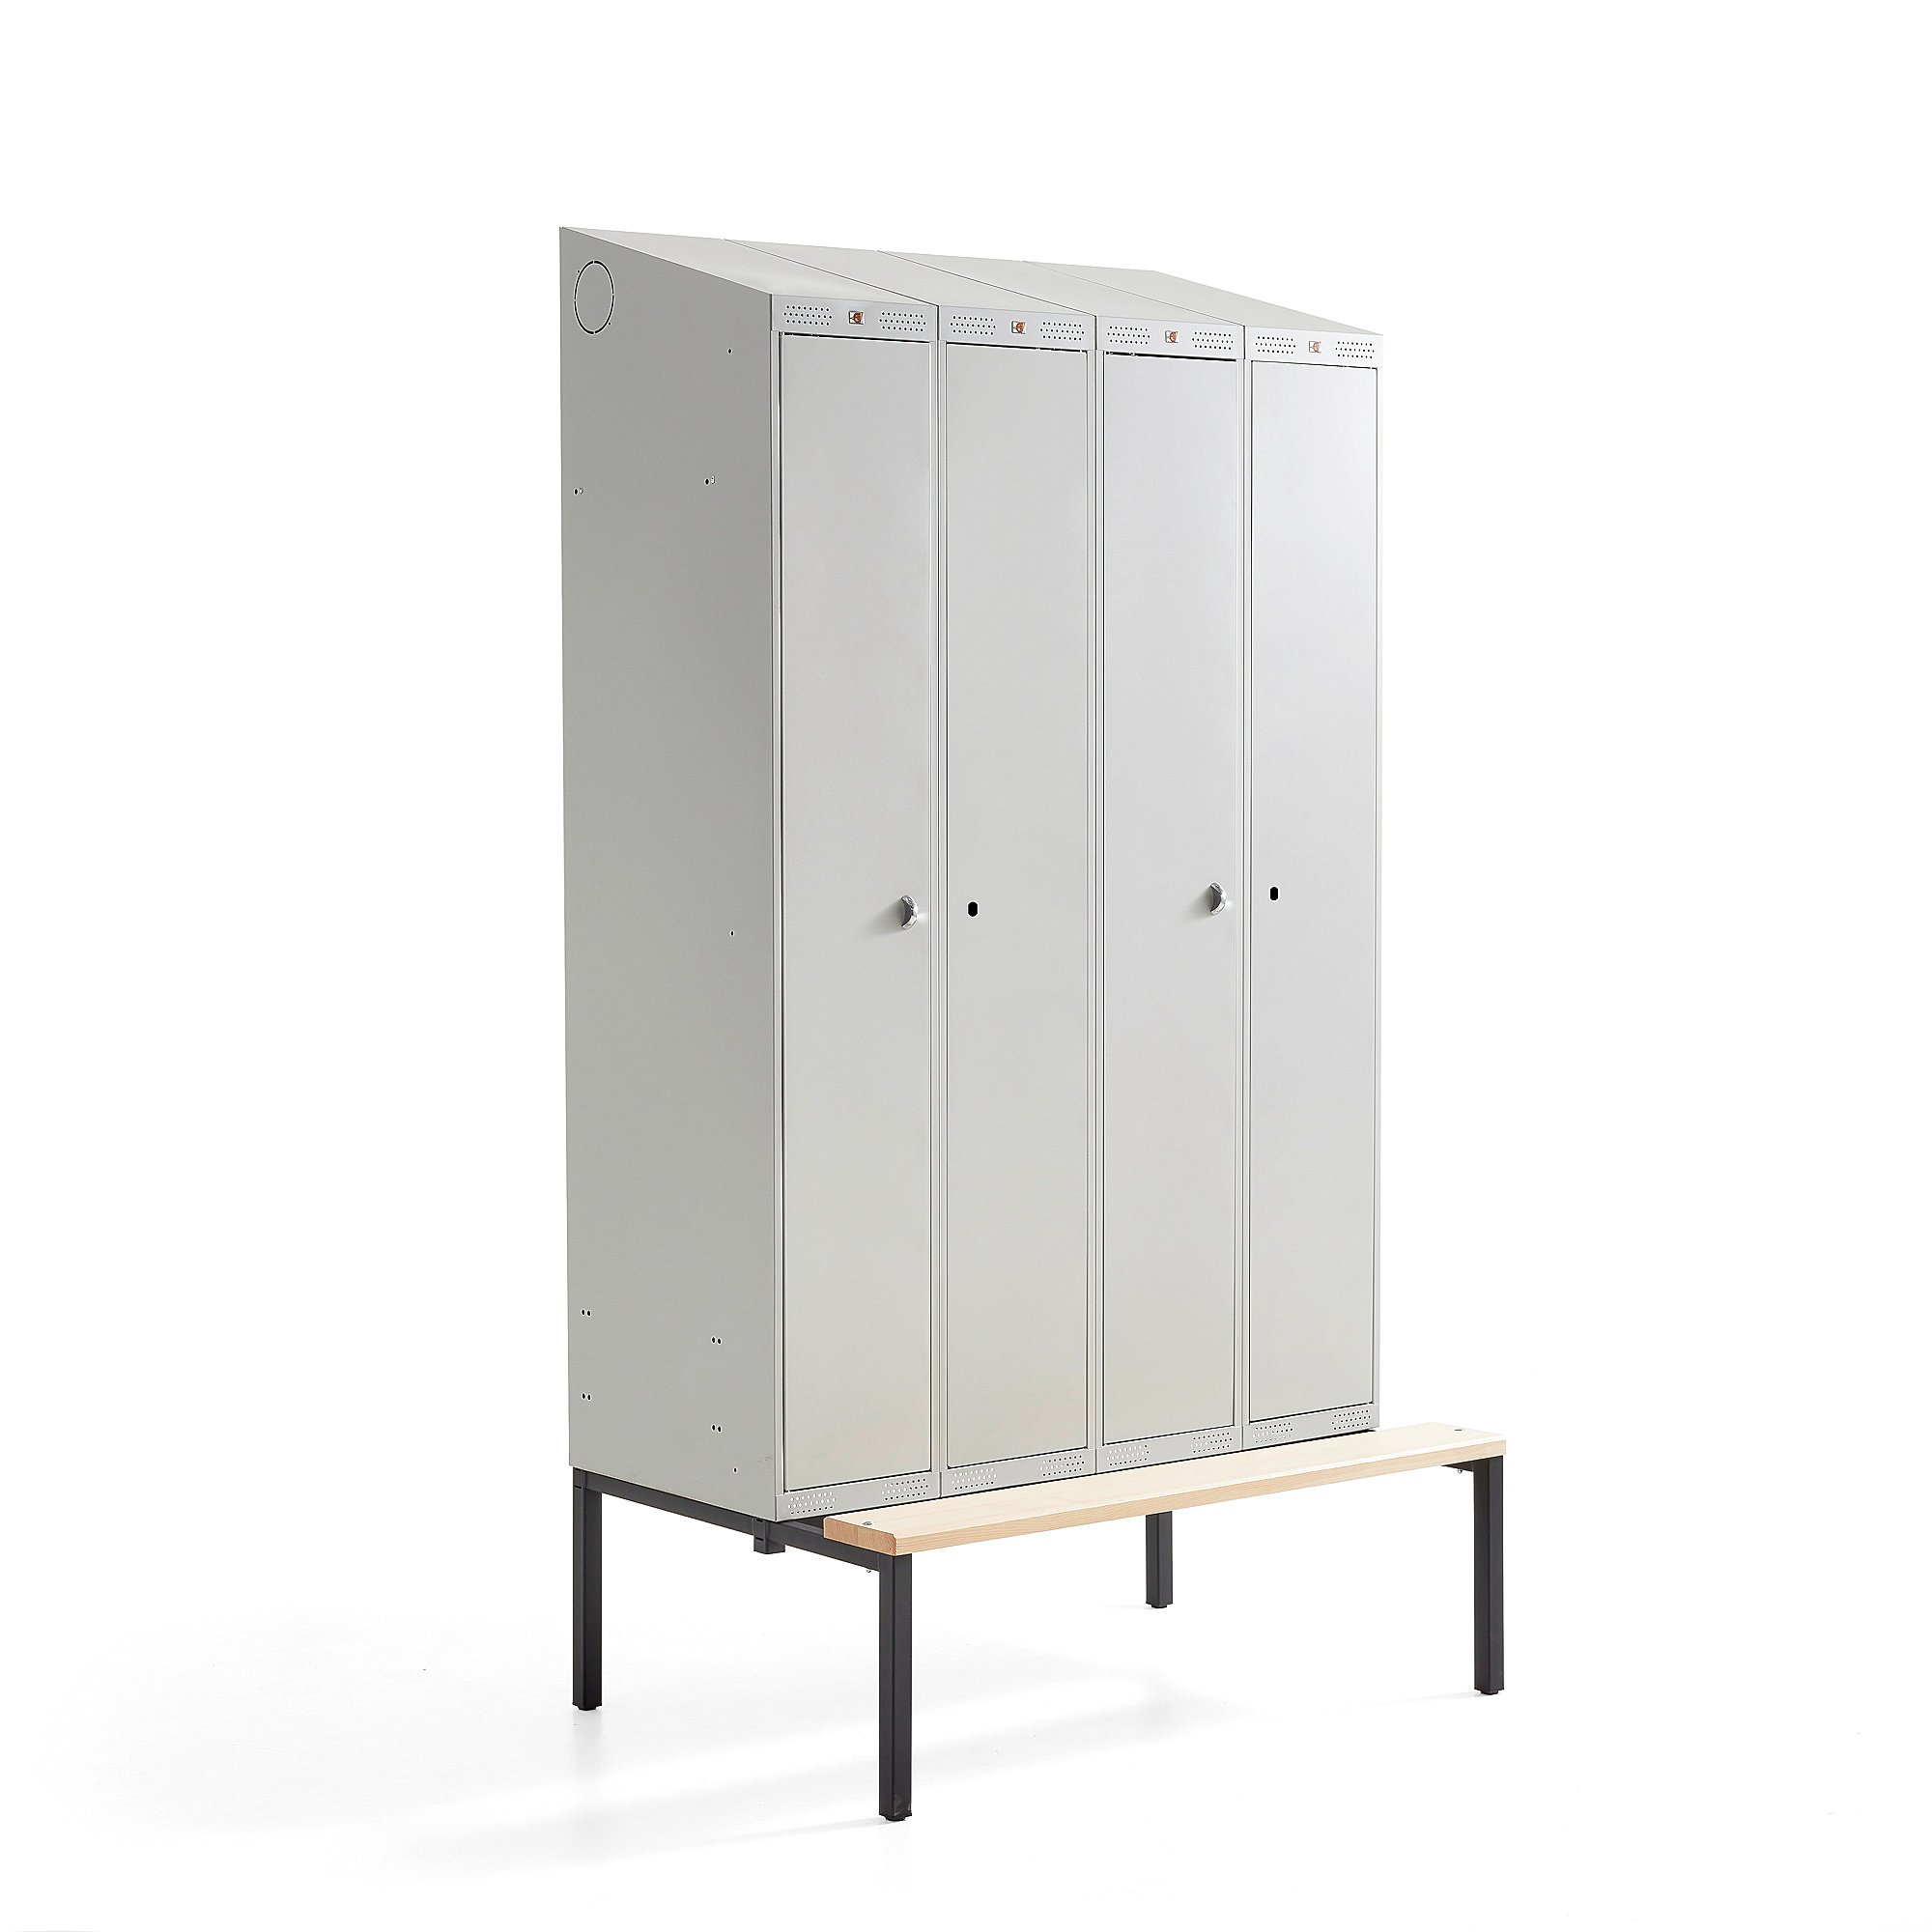 Šatní skříňka CLASSIC COMBO, 2 sekce, 4 boxy, 2290x1200x550 mm, lavice, šedé dveře